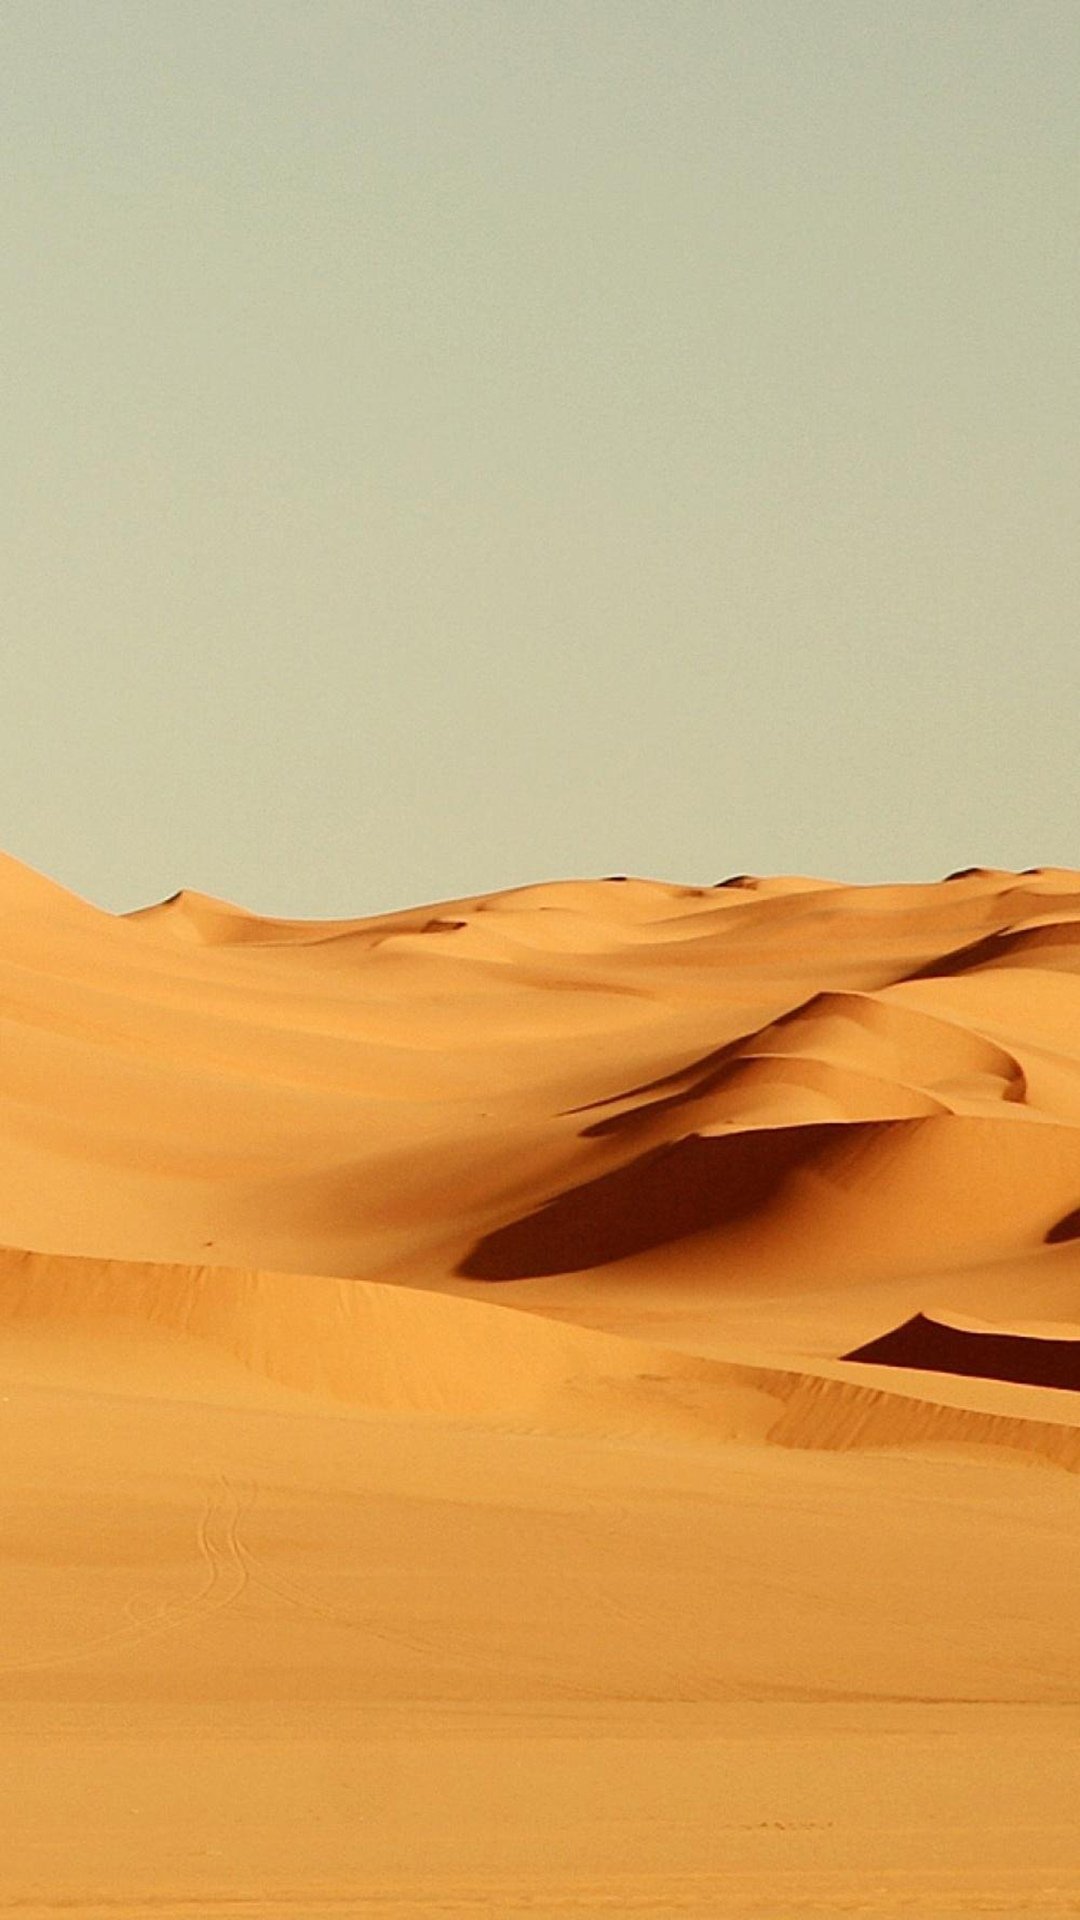 沙漠手机壁纸高清竖屏图片